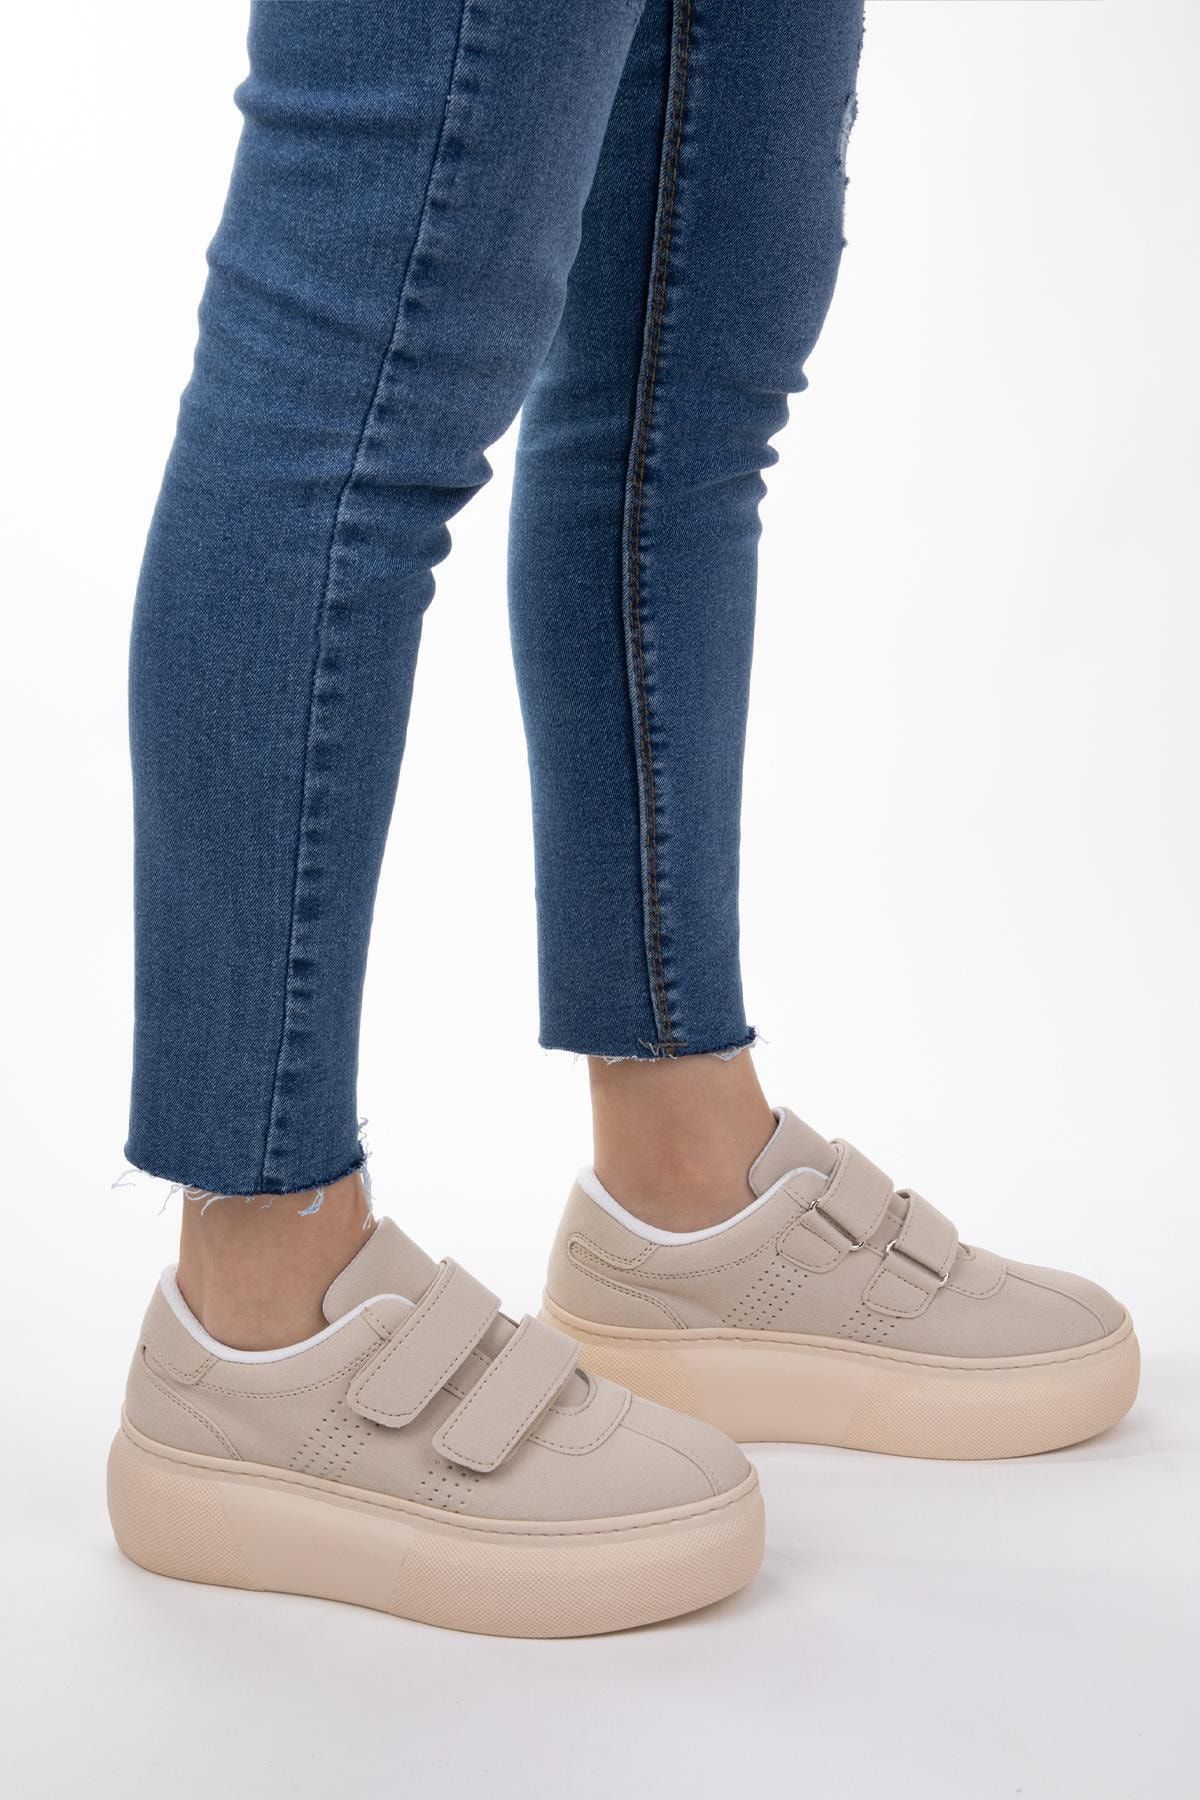 NAVYSIDE Kadın Bej Cilt Deri Cırt Cırtlı Sneaker Spor Ayakkabı Yürüyüş Ayakkabısı Yüksek Tabanlı Bantlı